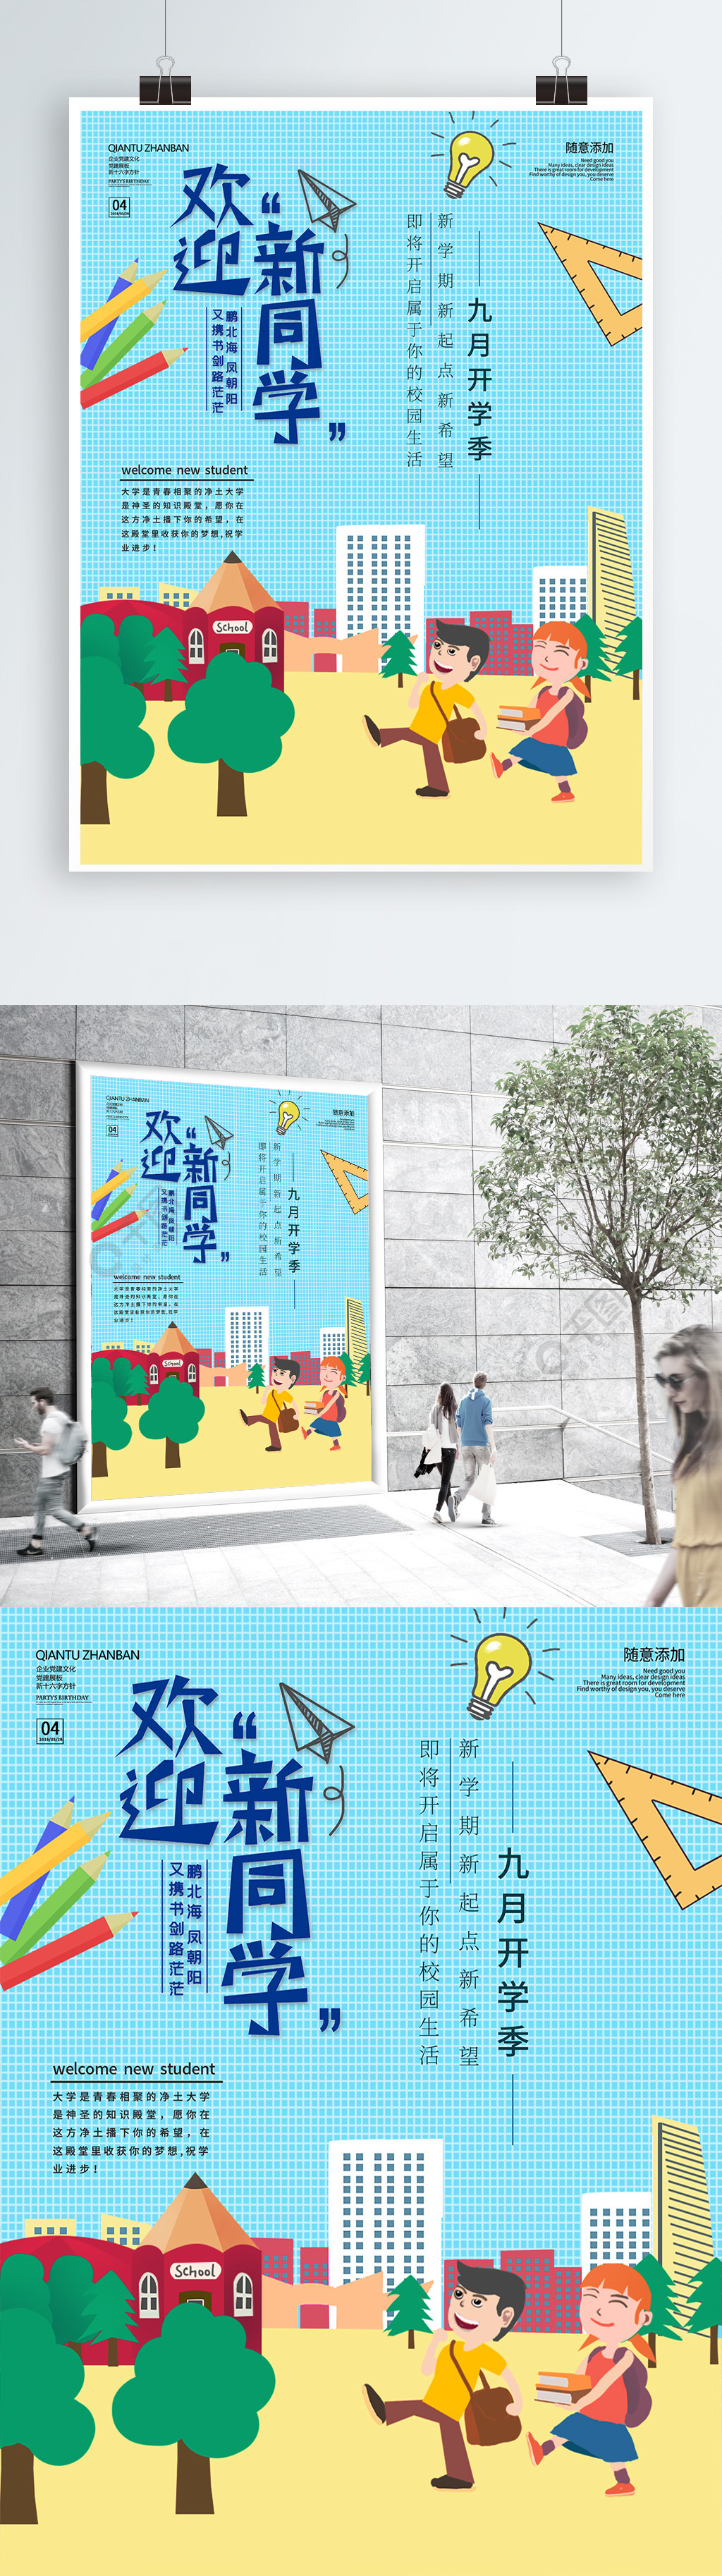 小清新欢迎新同学海报设计1年前发布